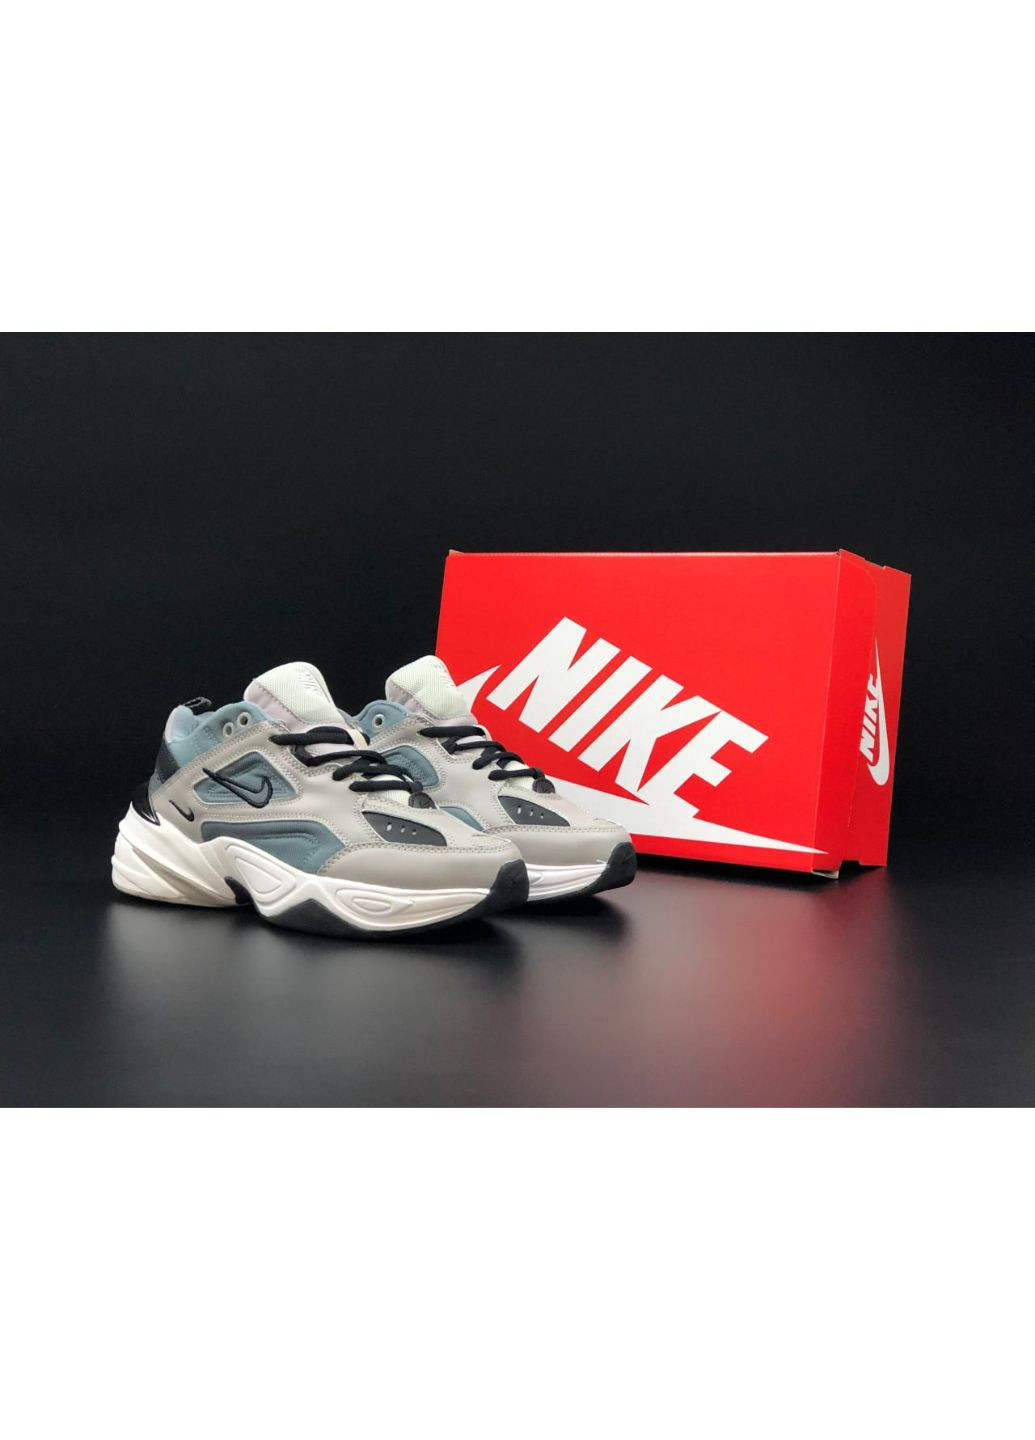 Серые демисезонные мужские кроссовки серые "no name" Nike M2k Tekno